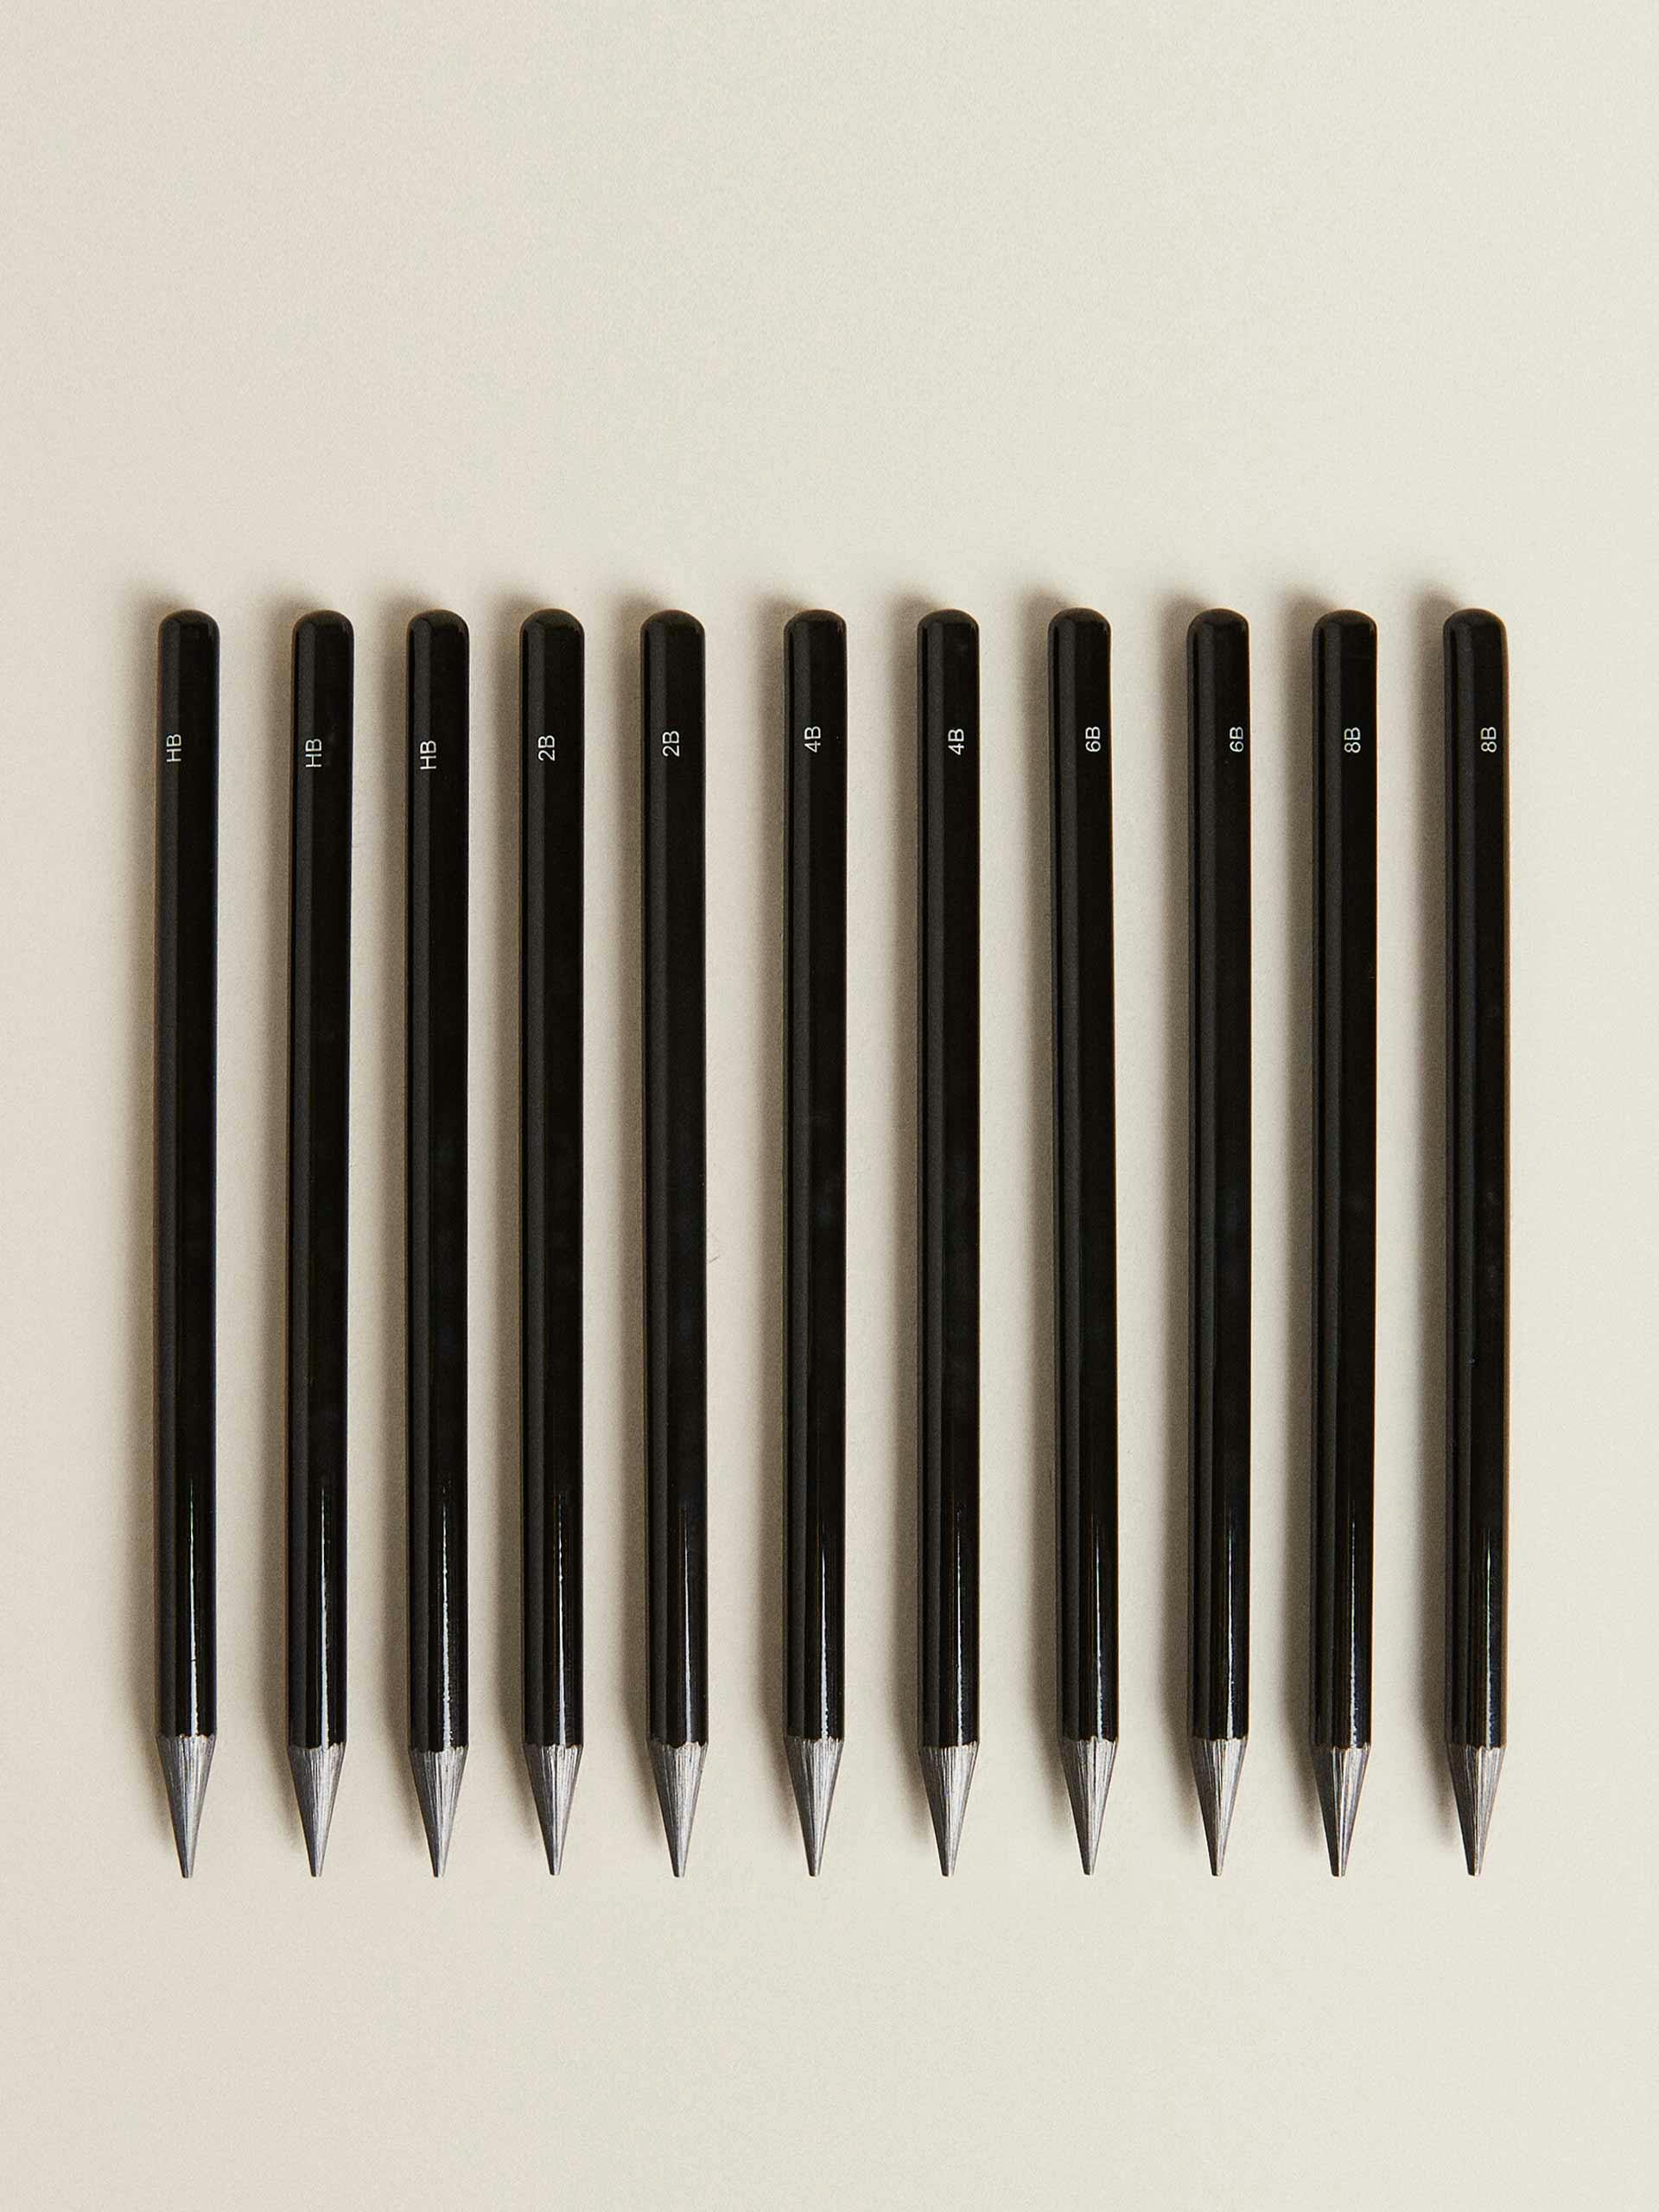 Box of graphite pencils